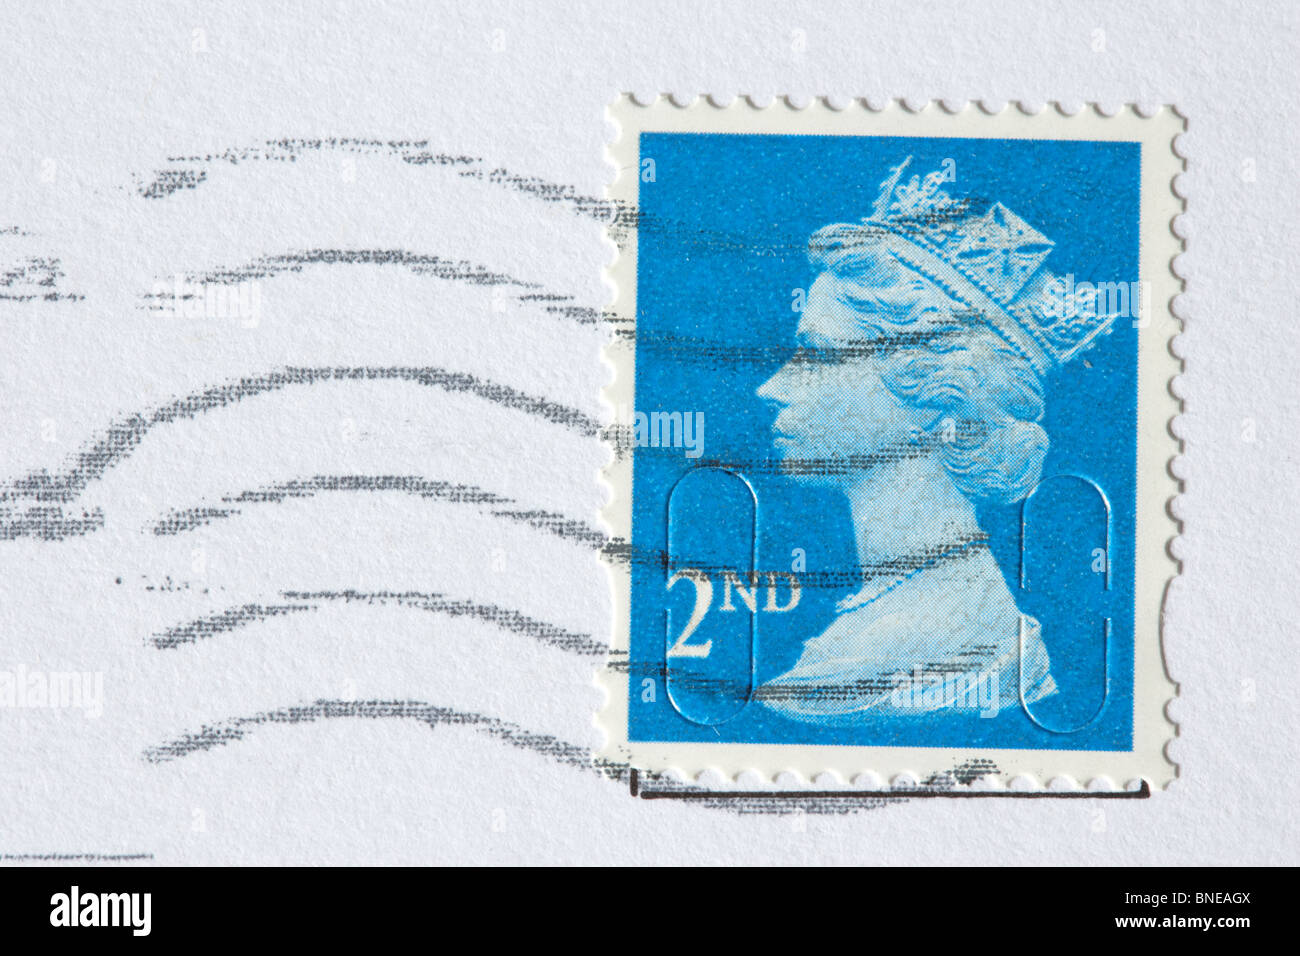 Cachet de franchise 2e classe royal mail stamp publié au Royaume-Uni Banque D'Images